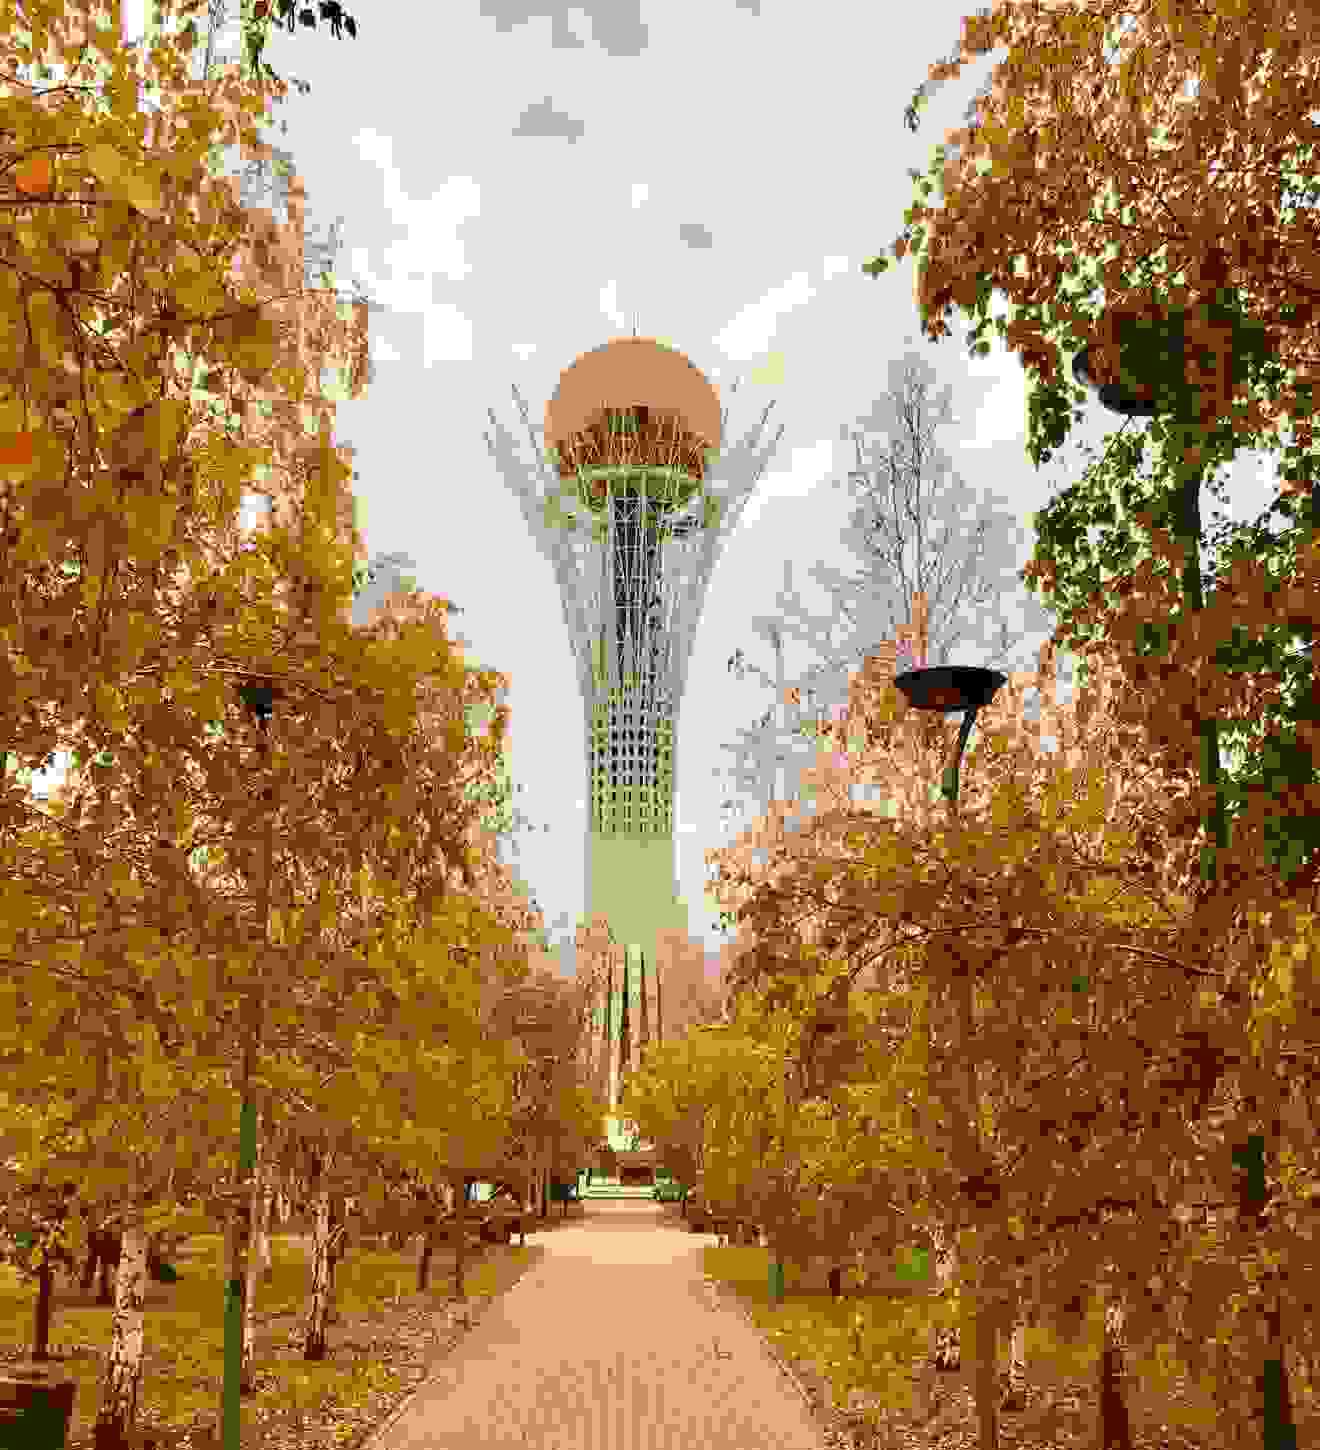 City in Kazakhstan